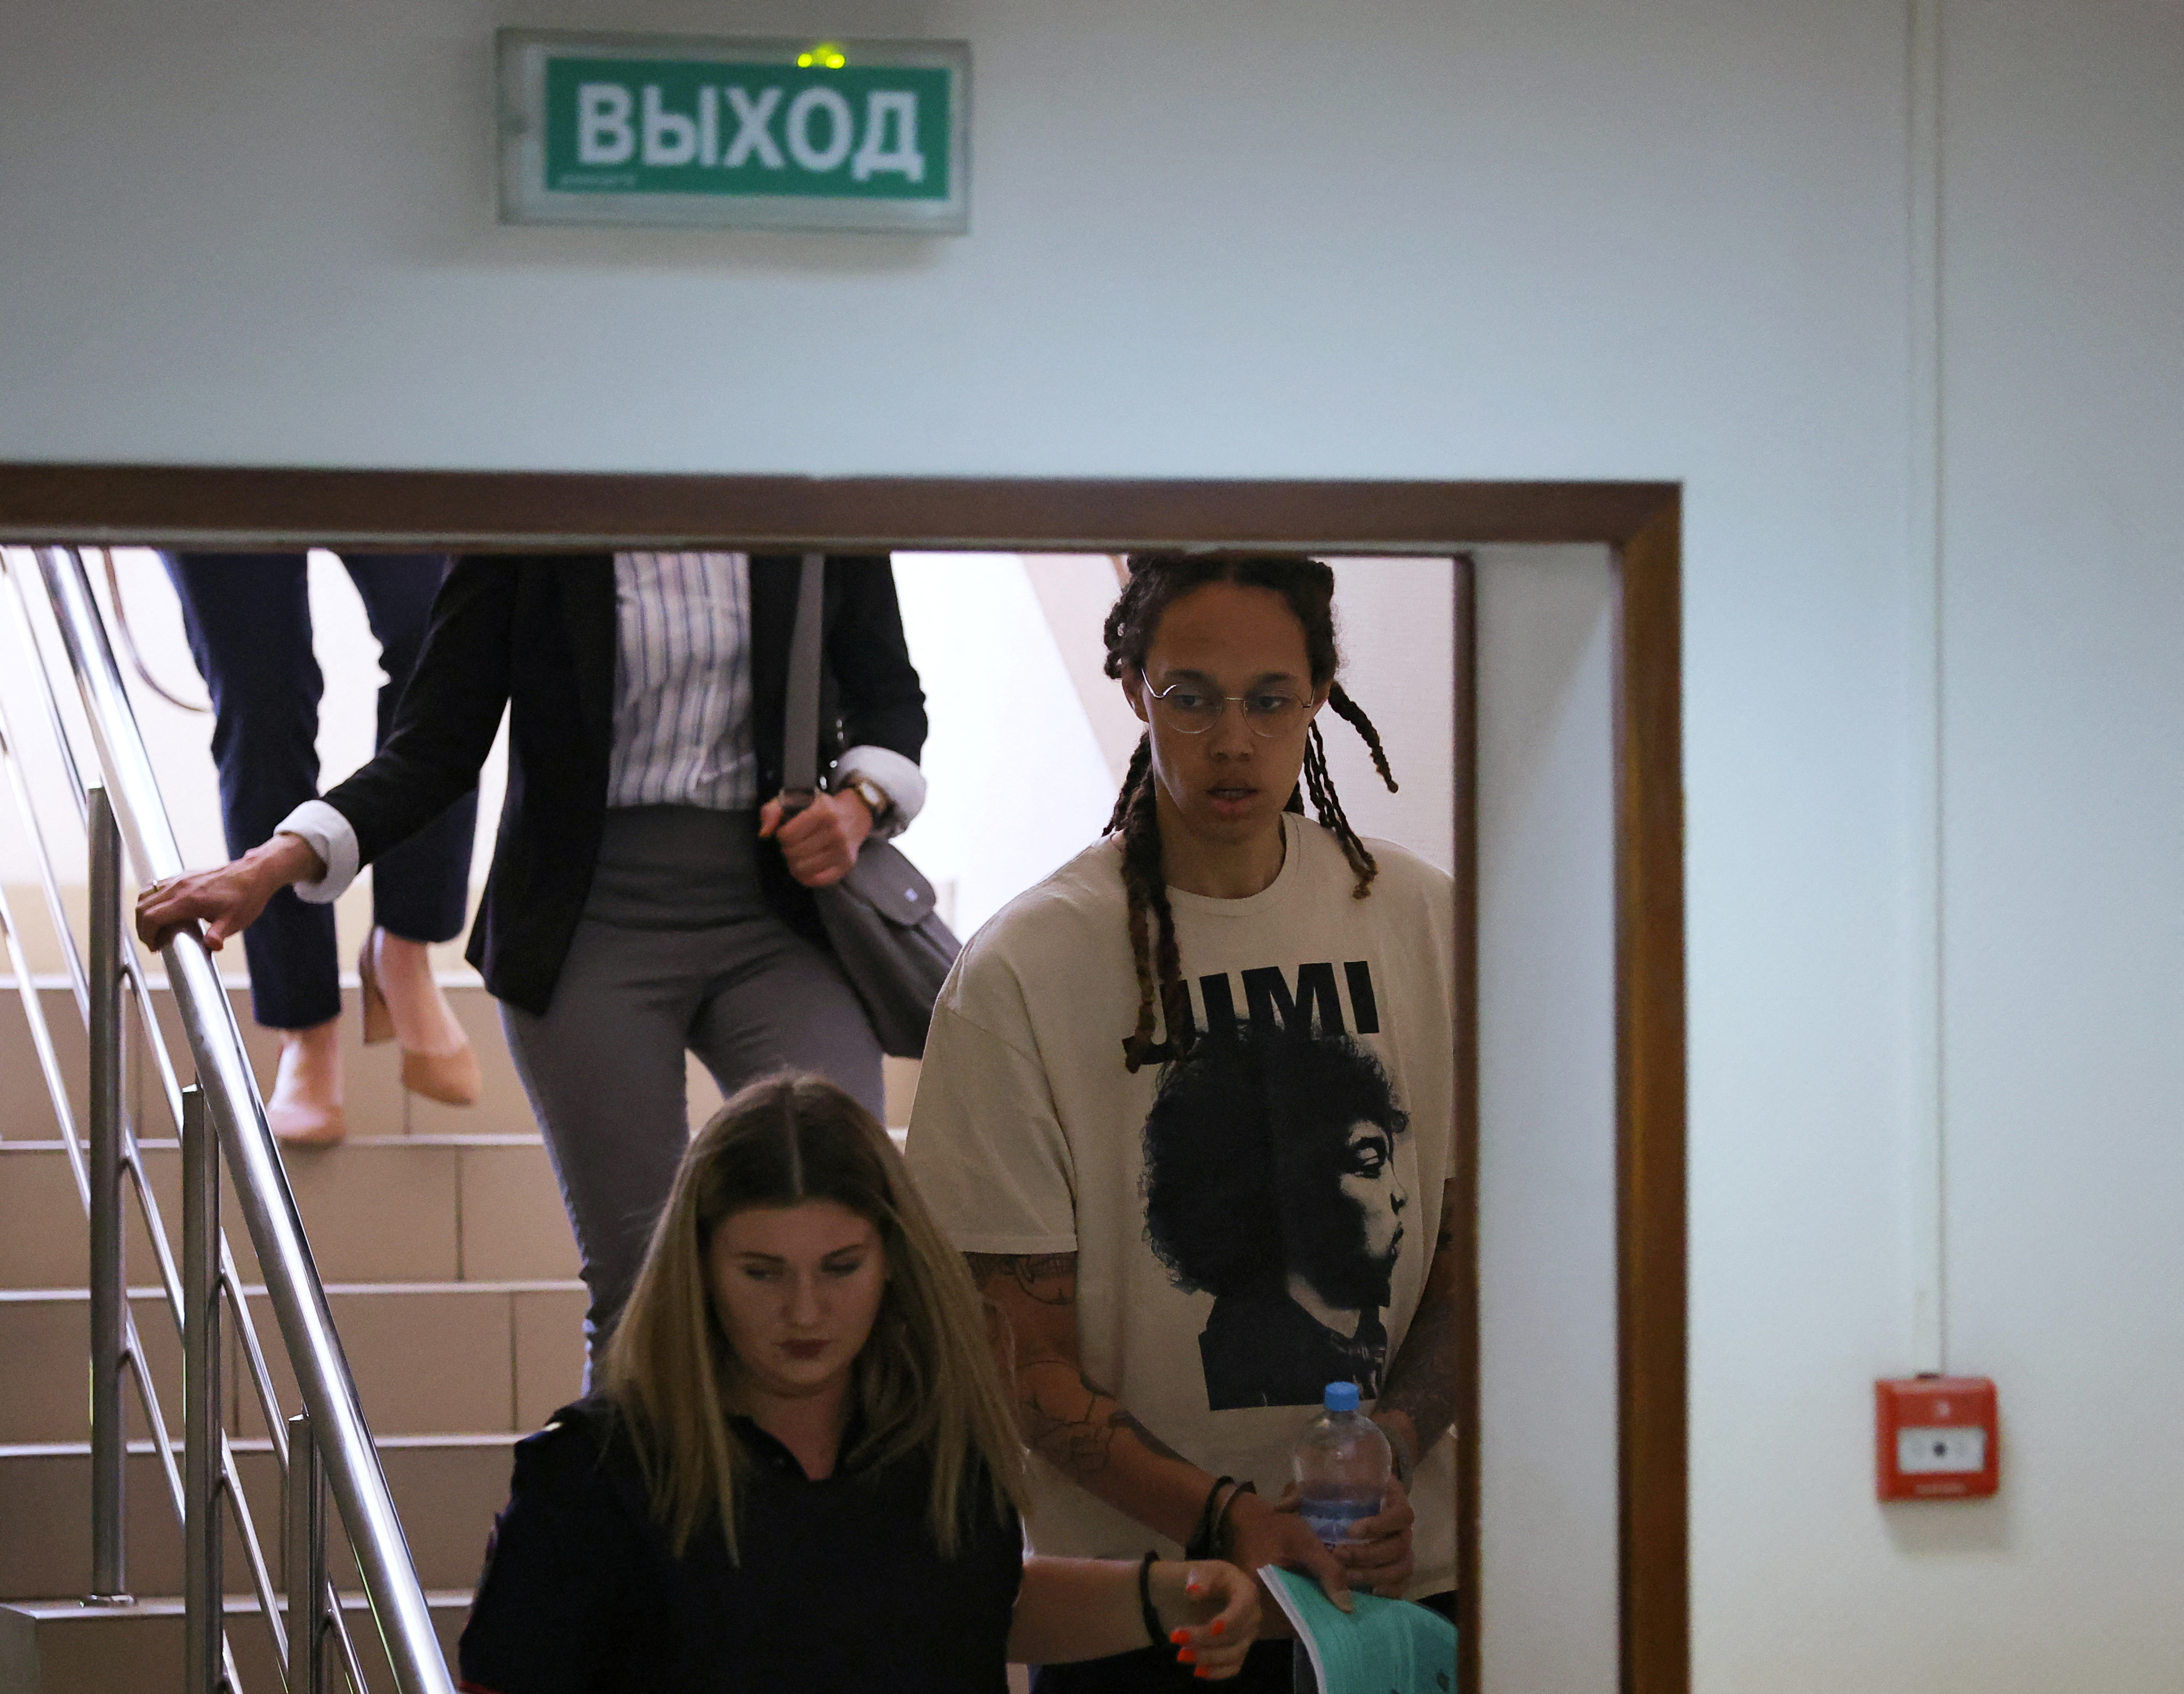 La jugadora de baloncesto estadounidense Brittney Griner, que fue detenida en marzo en el aeropuerto moscovita de Sheremetyevo y posteriormente acusada de posesión ilegal de cannabis, es escoltada antes de una vista judicial en Khimki, a las afueras de Moscú, Rusia, el 1 de julio de 2022. REUTERS/Evgenia Novozhenina